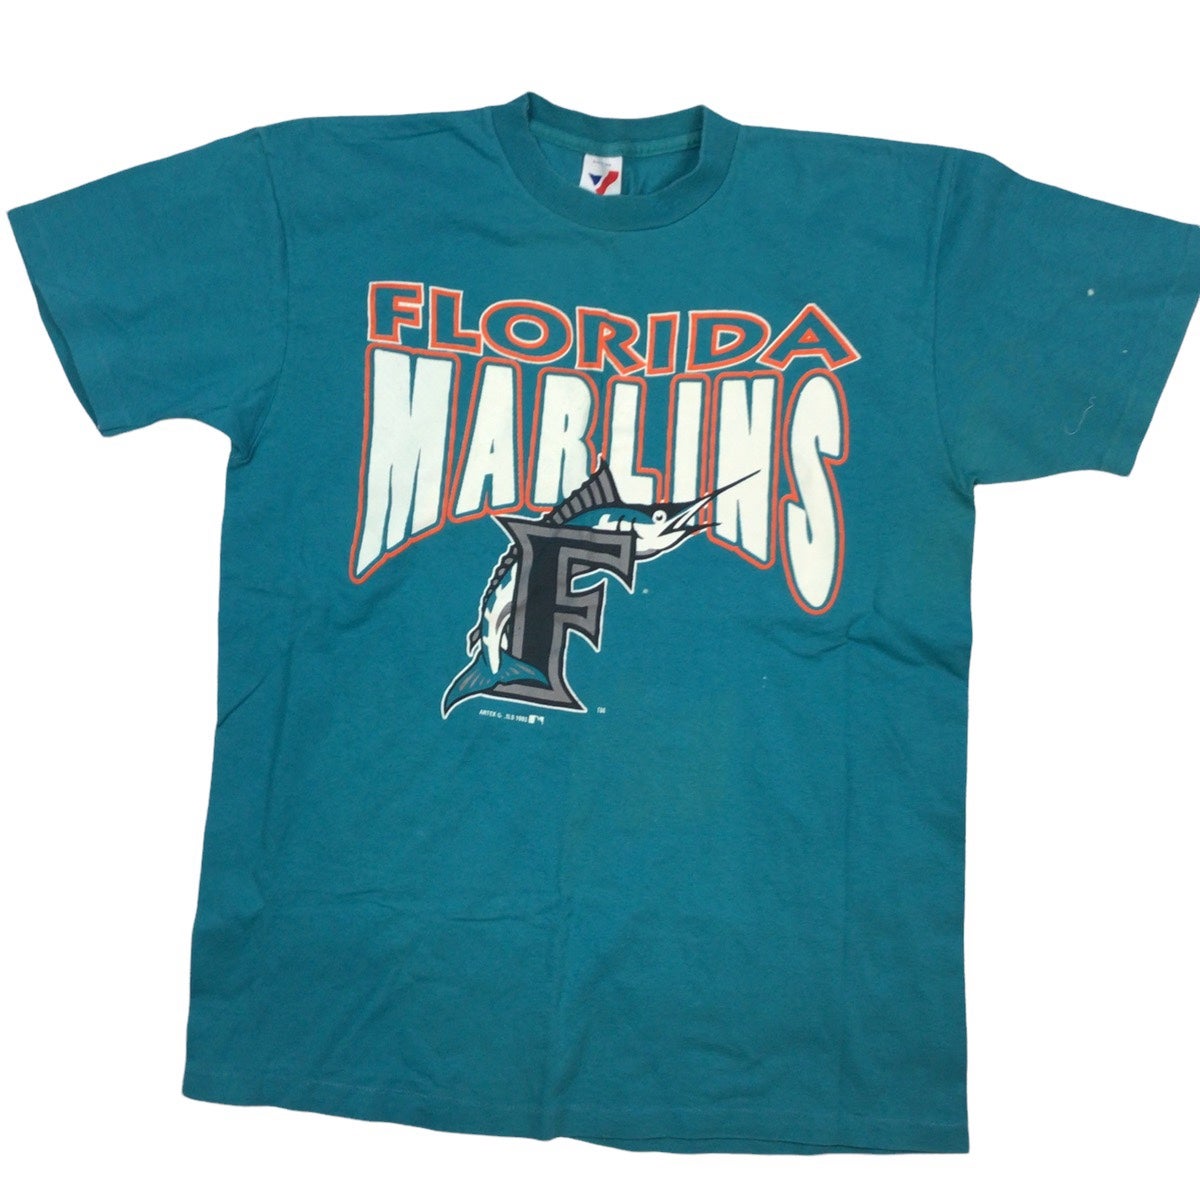 Vintage1993 Florida Marlins MLB Baseball Jersey (Size L) for Sale